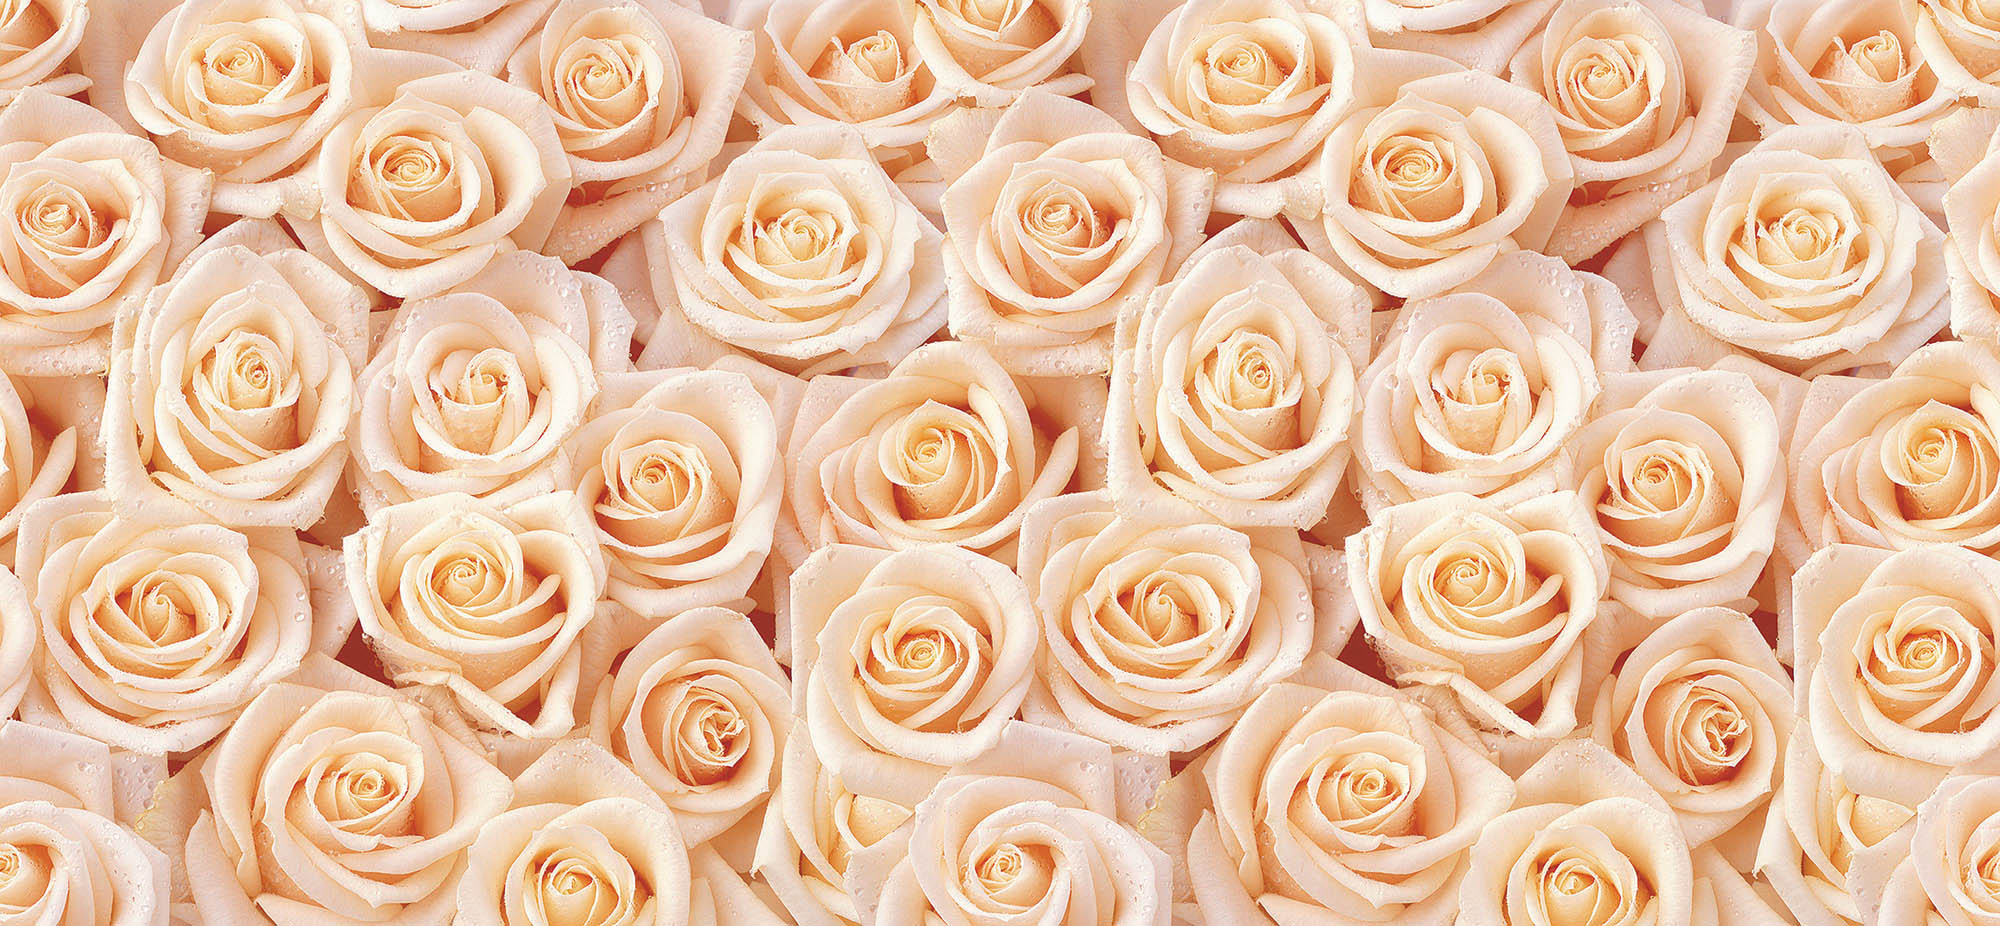 Фото большого количества персиковых роз